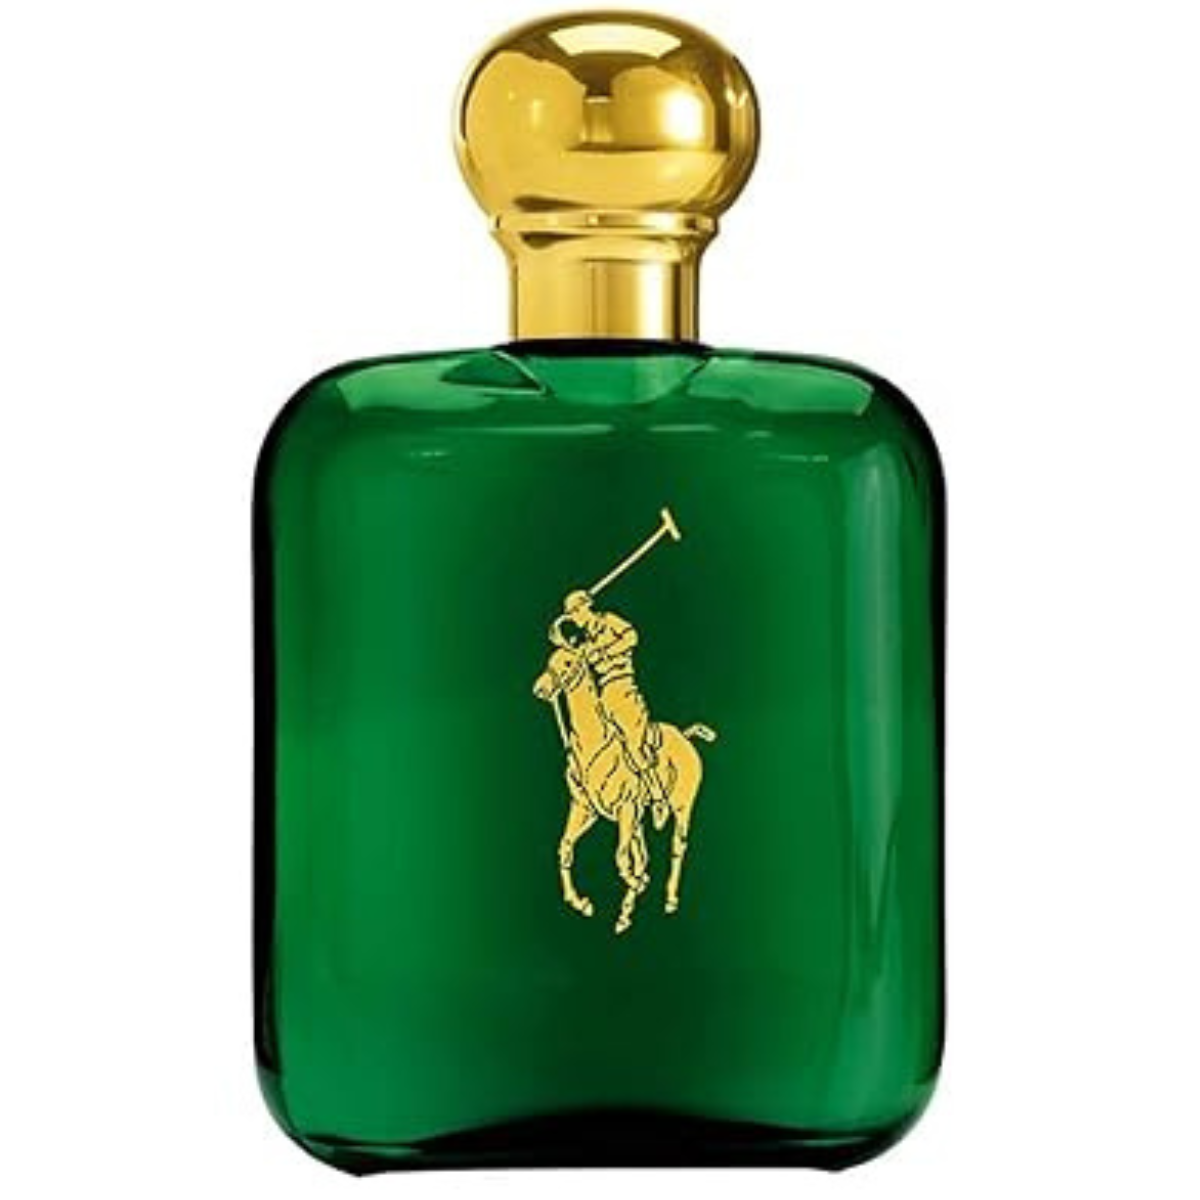 Ralph Lauren Polo Green 118 Ml For Men Perfume